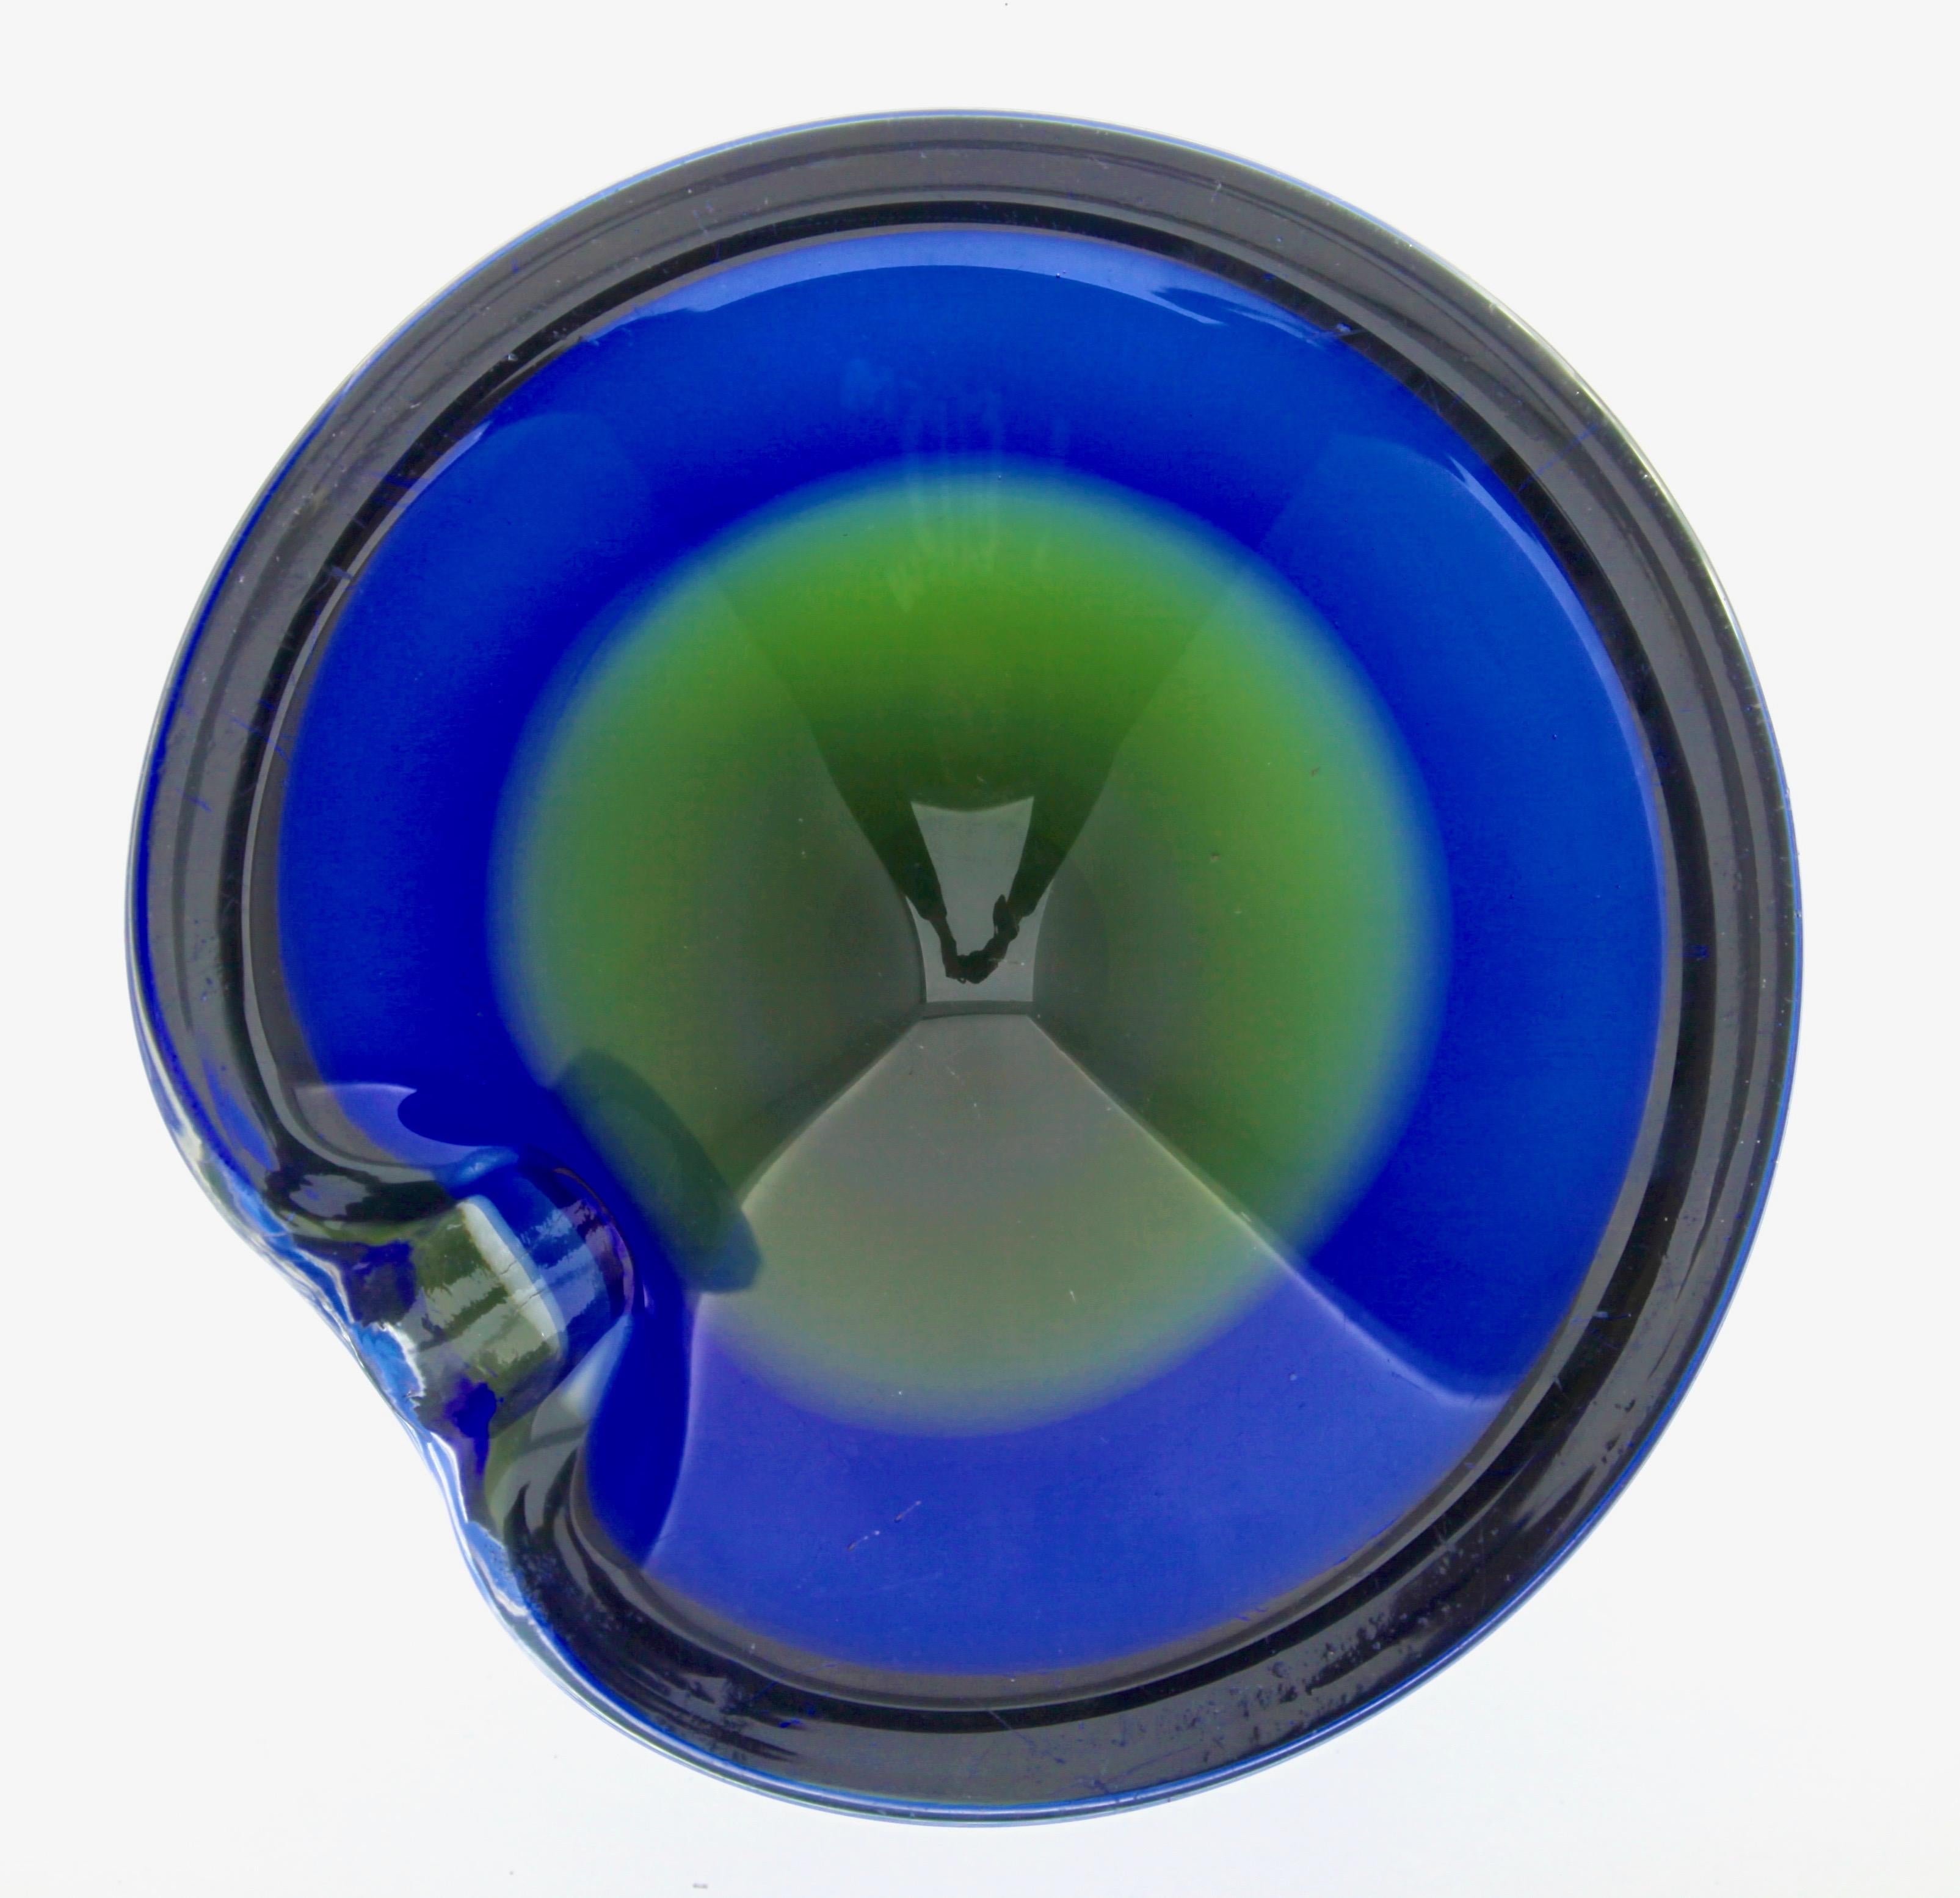 Schwere, gelippte Schale aus Spitzenkristall, hergestellt in den 1970er Jahren in der Tschechischen Republik. Die dramatische olivgrüne und kobaltblaue Schale wurde aus hochwertigem Kristall handgefertigt und zeichnet sich durch eine meisterhafte